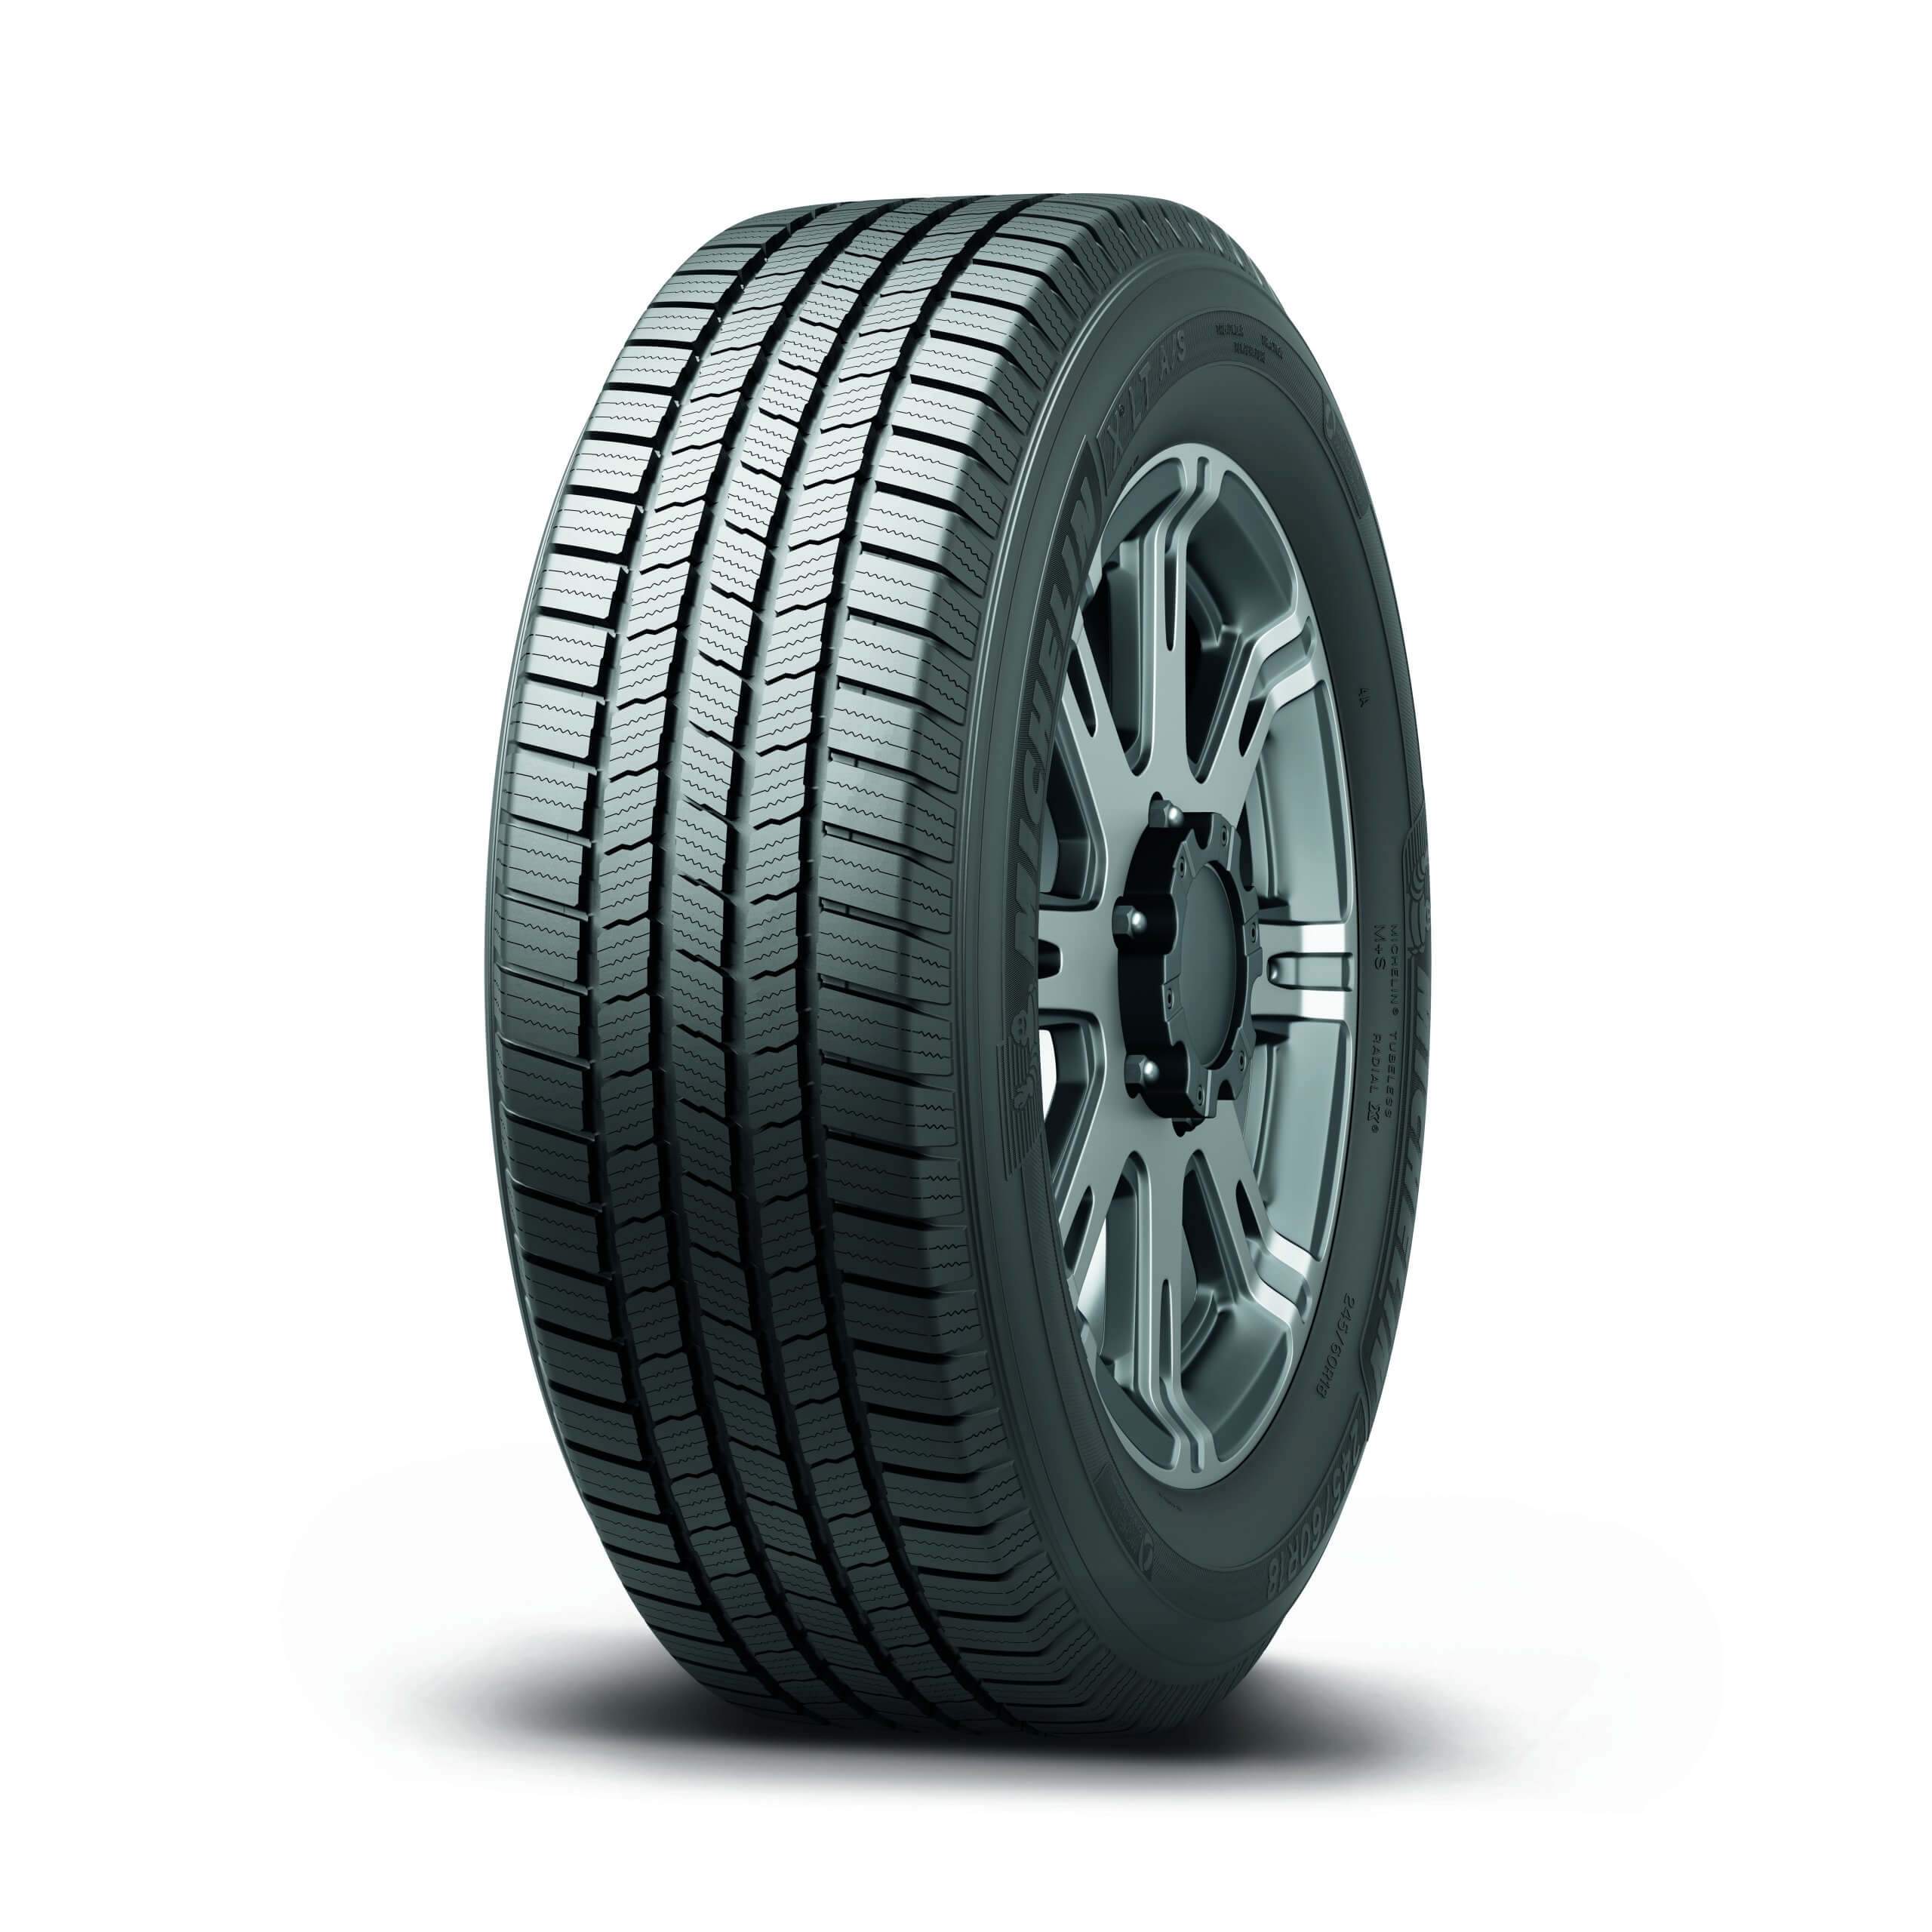 Neumático MICHELIN 265/75 R16 X LT A/S ORWL